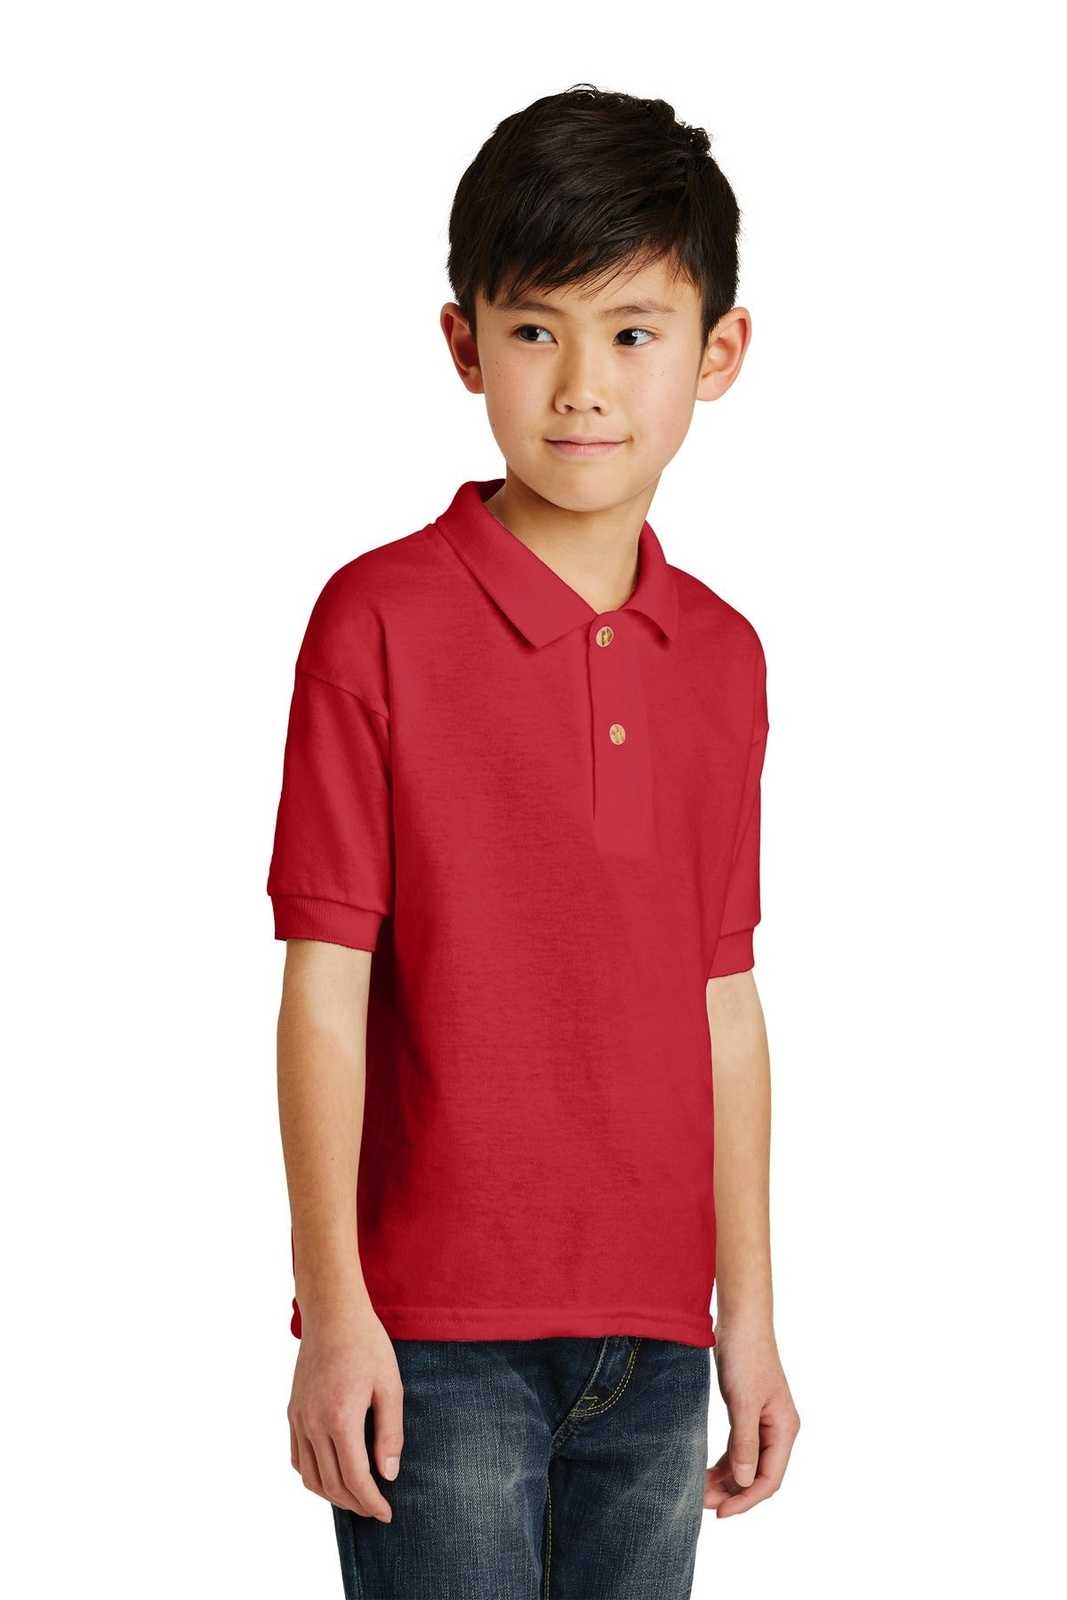 Gildan 8800B Youth Dryblend 6-Ounce Jersey Knit Sport Shirt - Red - HIT a Double